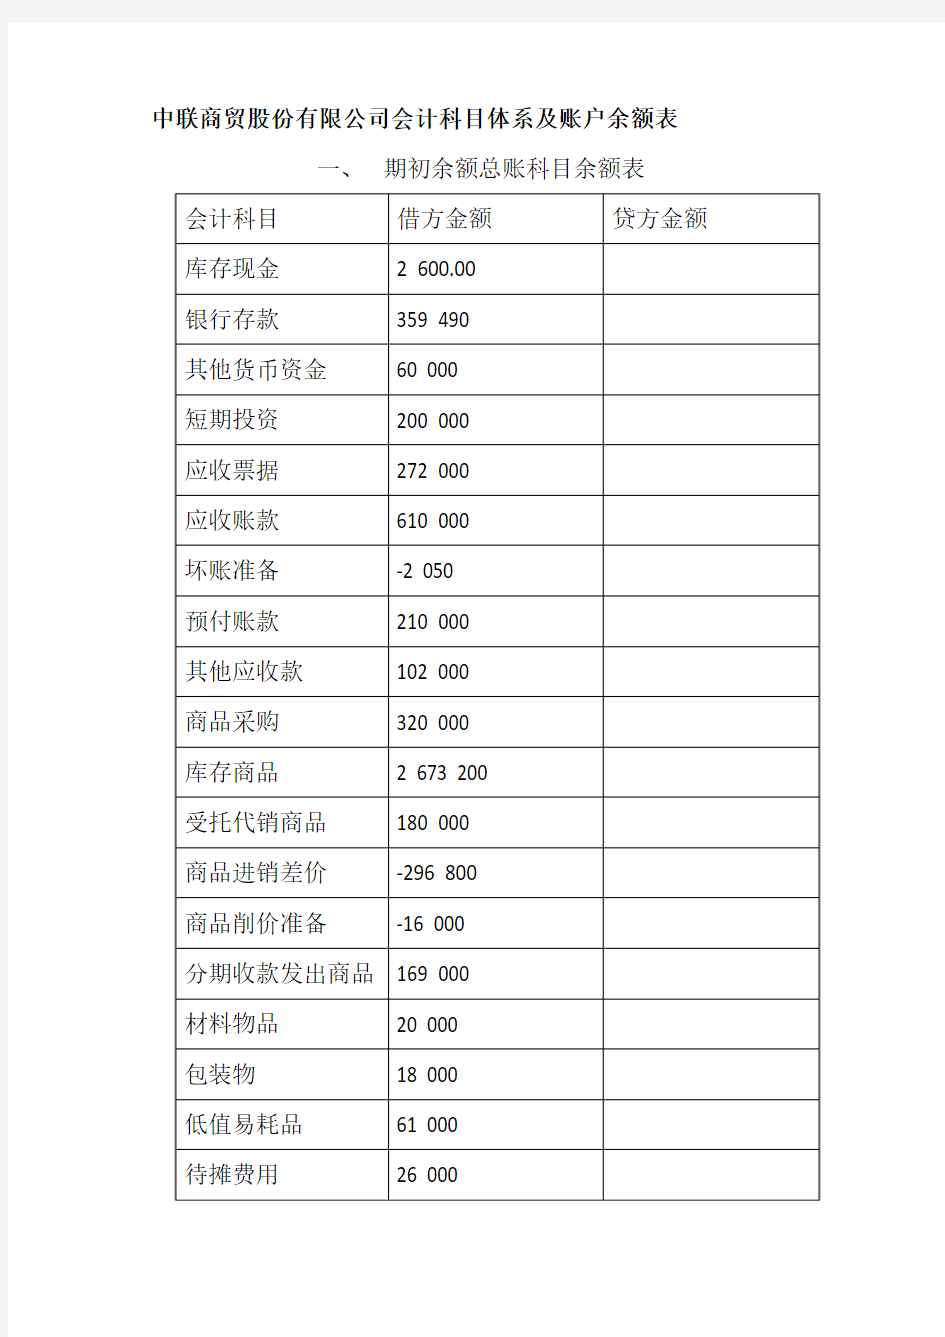 中联商贸公司2012年12月份发生的经济业务如下